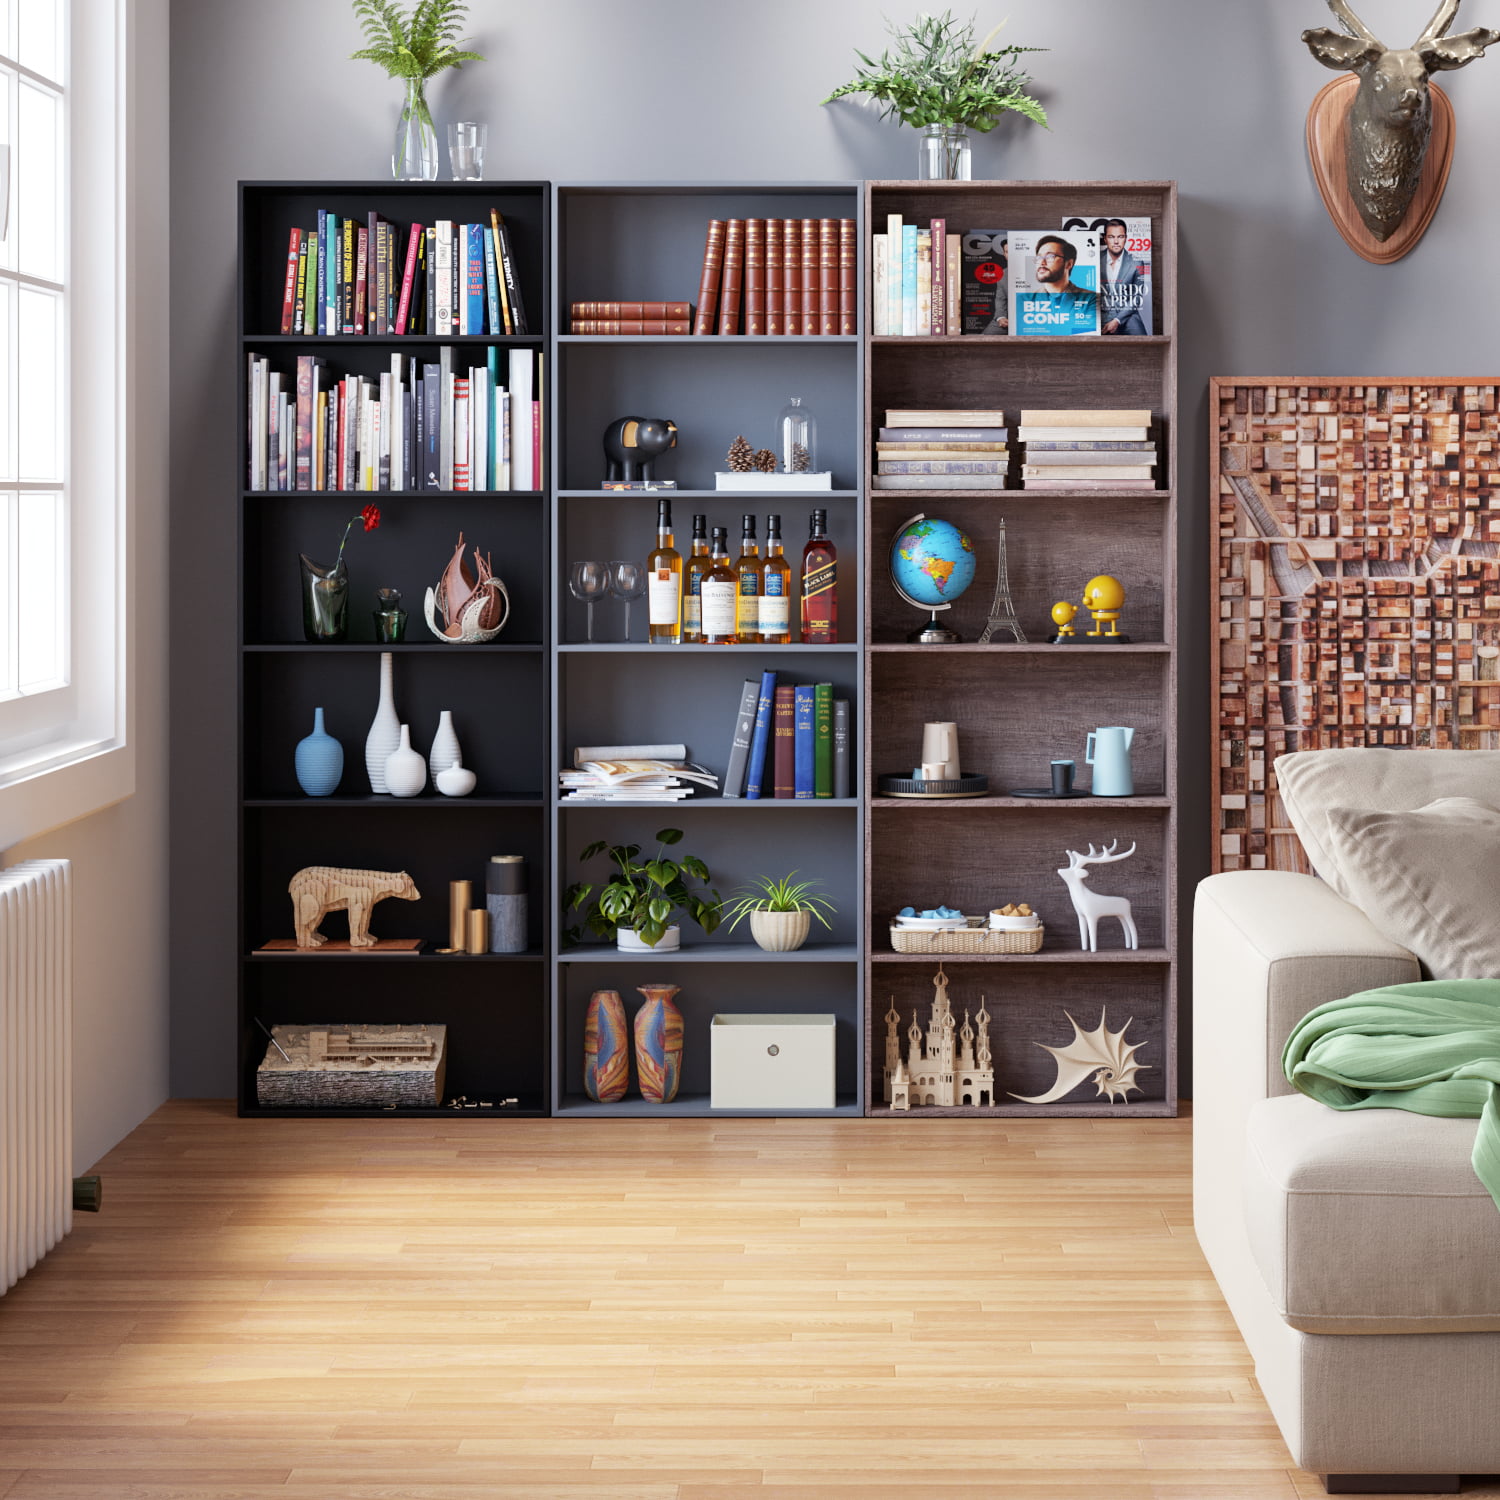 Black 6-Tier Bookshelf for Home Office